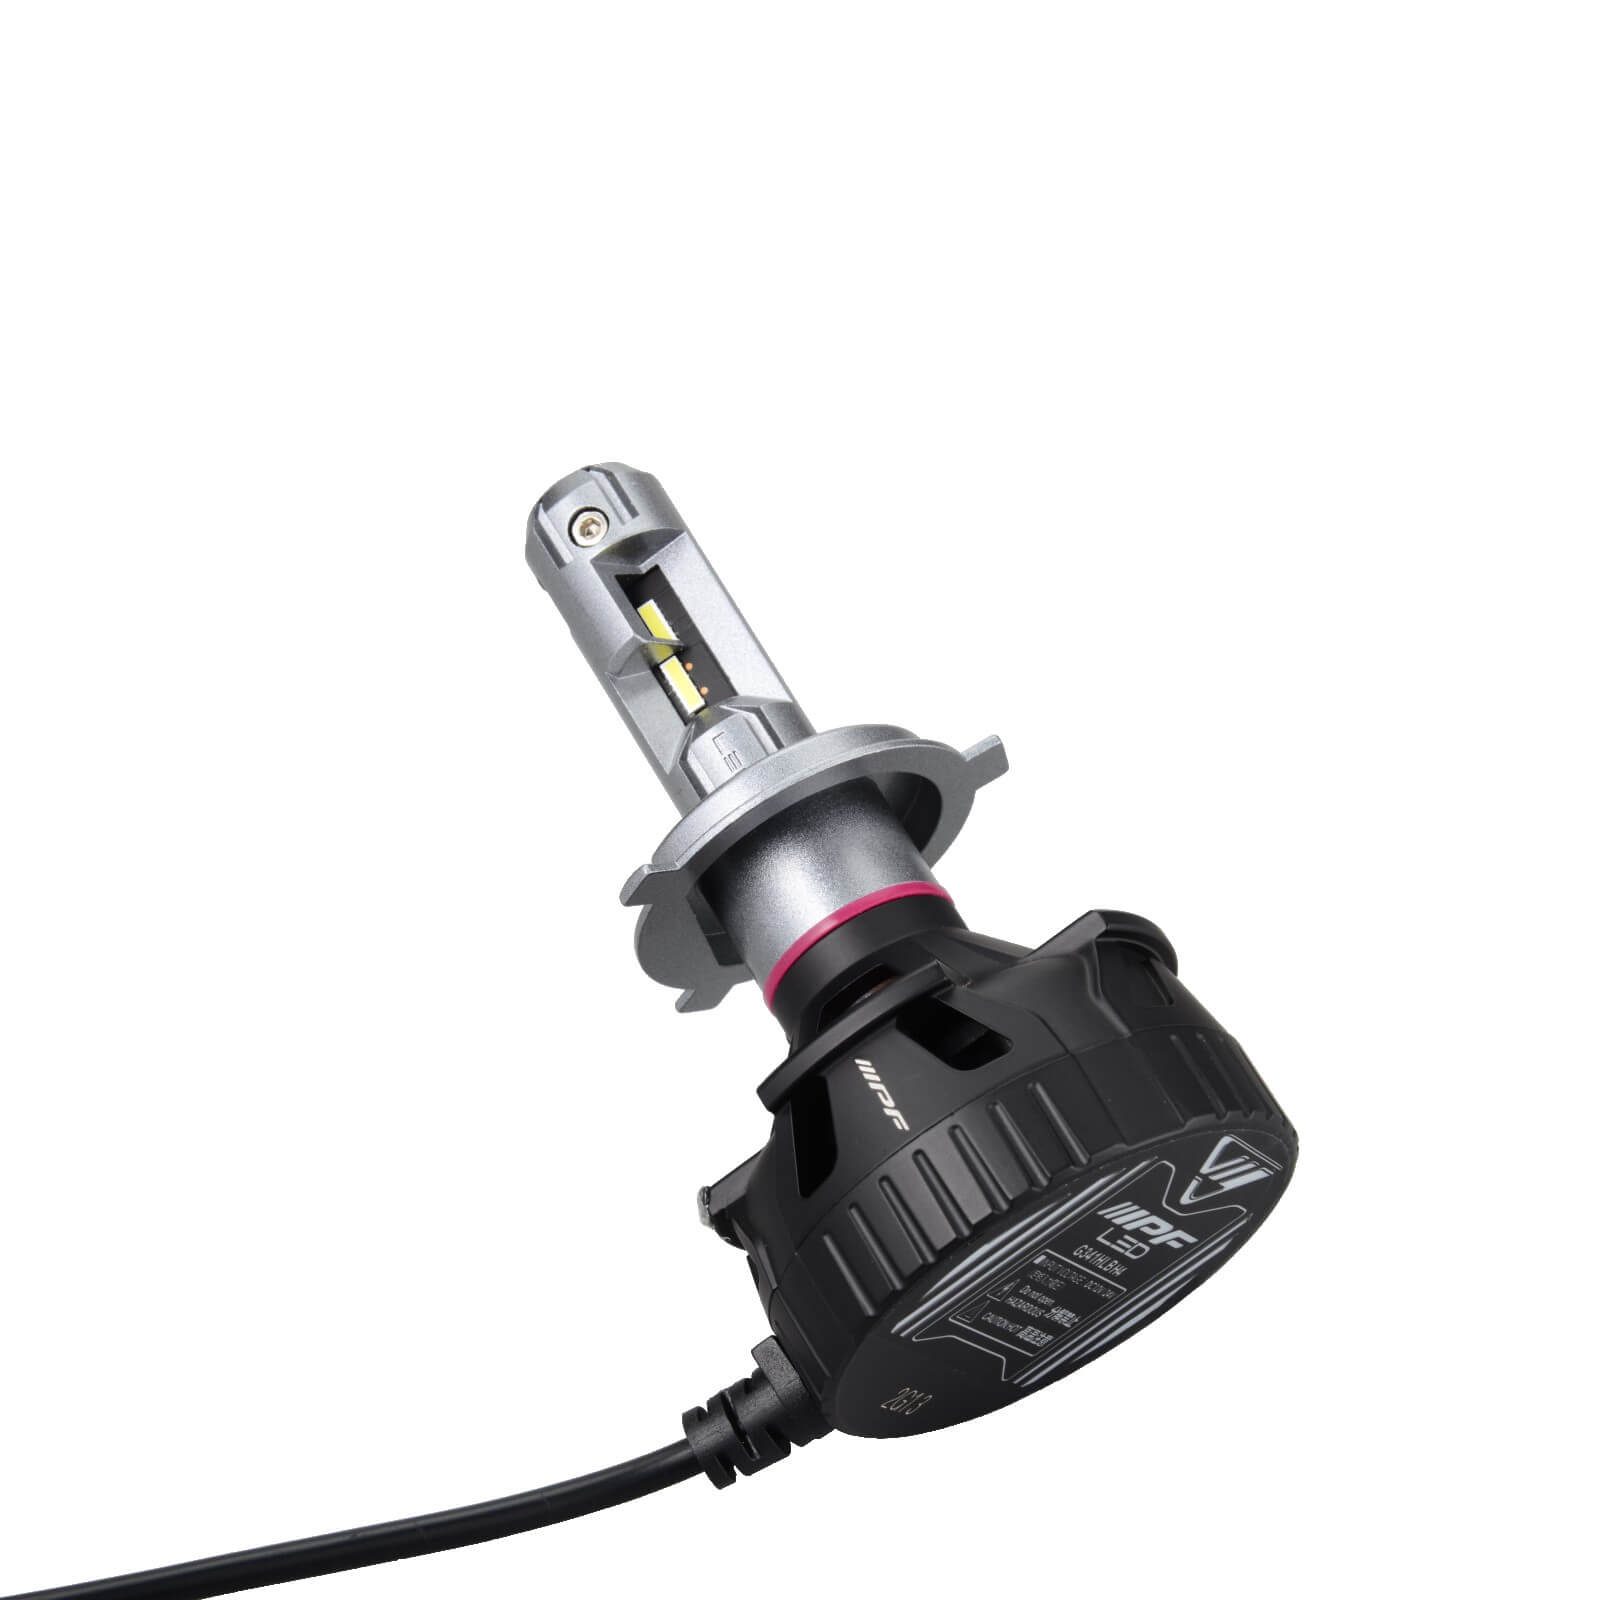 H4 LED 4000 LM Headlight bulbs - White - for Land Rover Defender